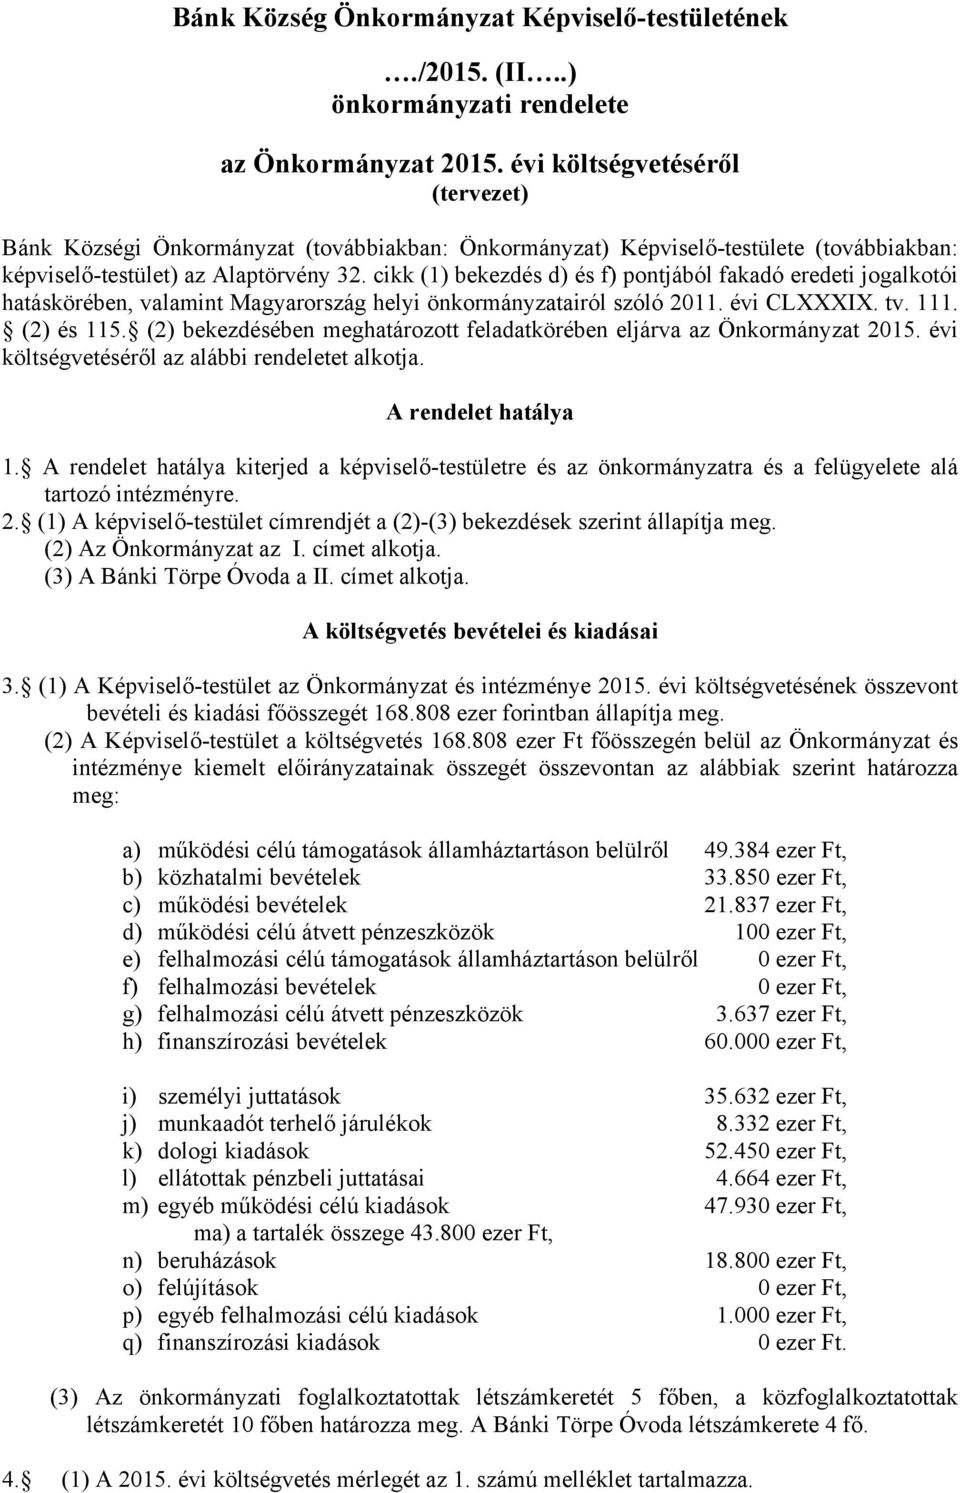 cikk (1) bekezdés d) és f) pontjából fakadó eredeti jogalkotói hatáskörében, valamint Magyarország helyi önkormányzatairól szóló 2011. évi CLXXXIX. tv. 111. (2) és 115.